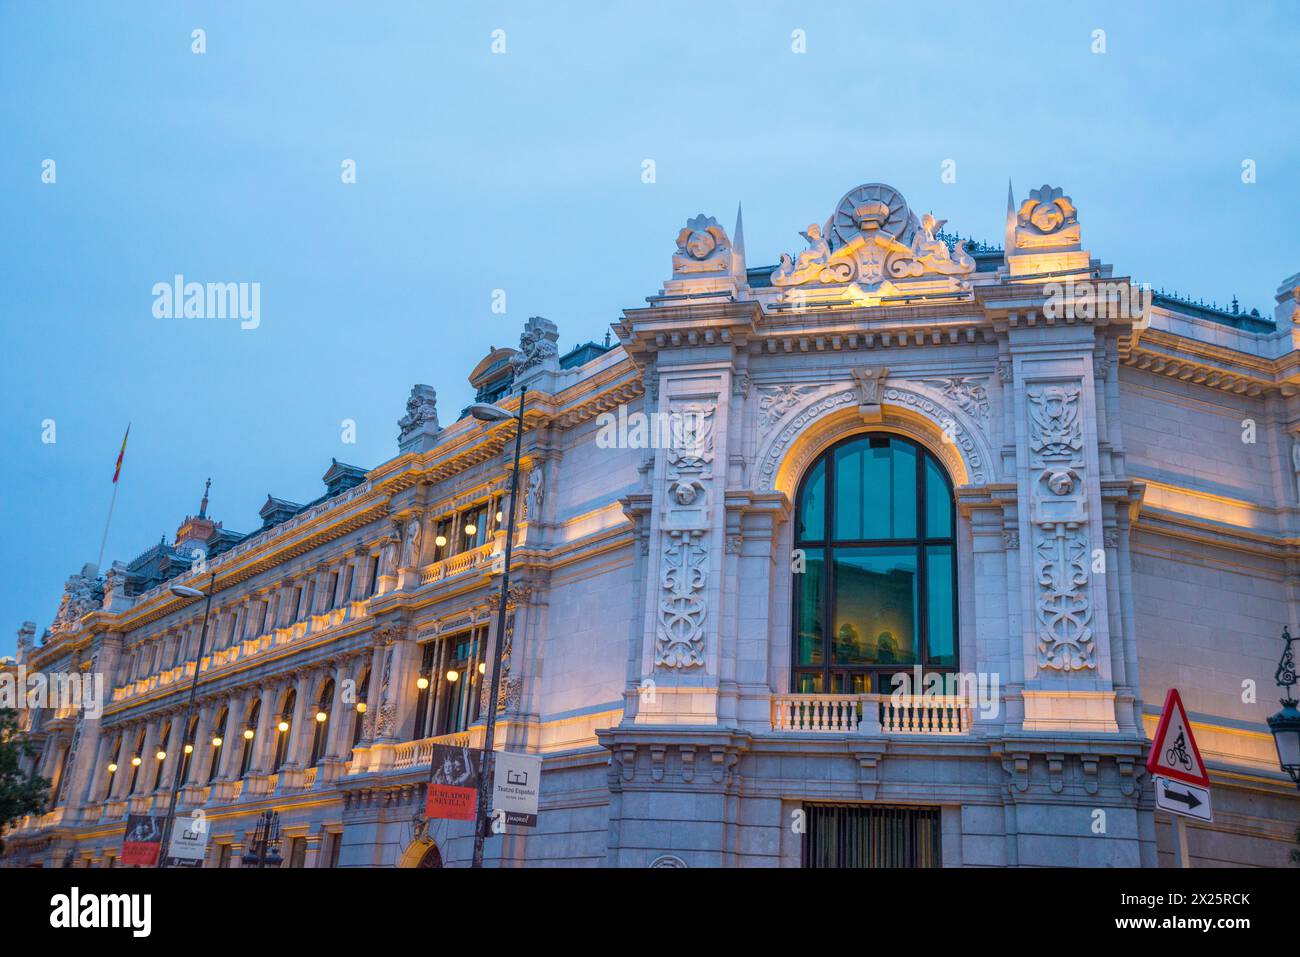 Facade of Banco de España, night view. Madrid, Spain. Stock Photo